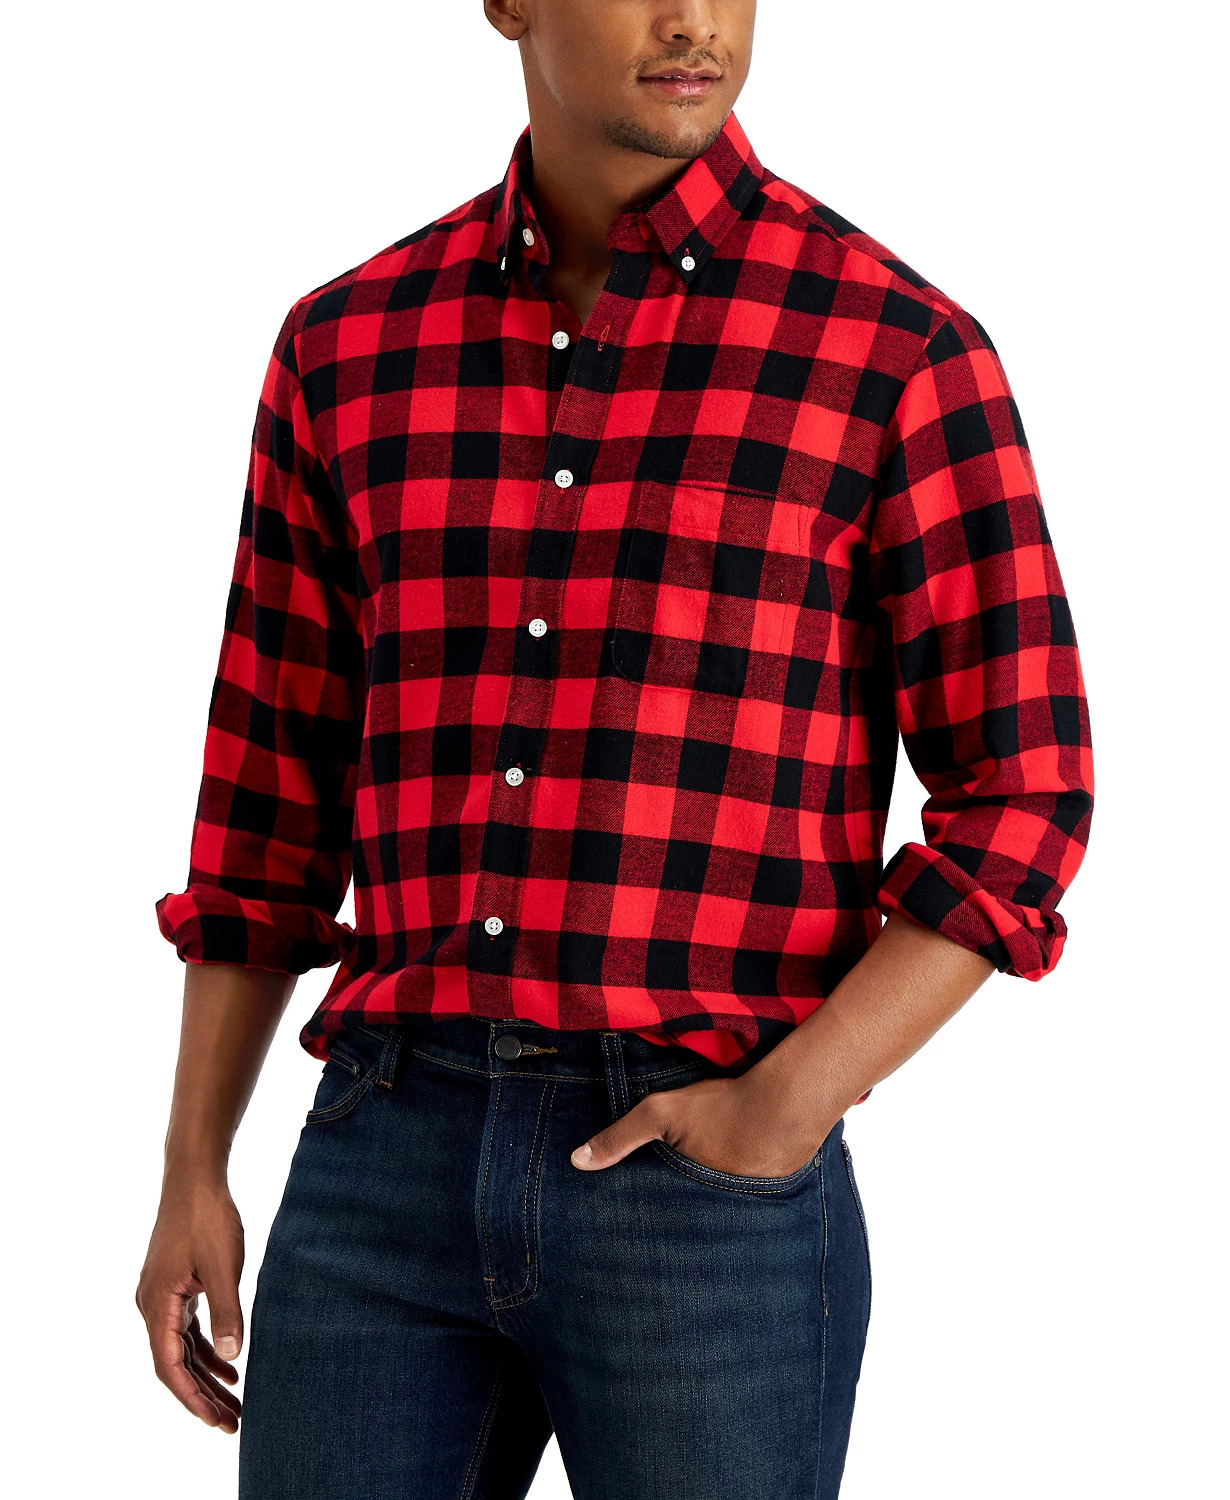 Men's Plaid Flannel Shirt 75% off $9.99